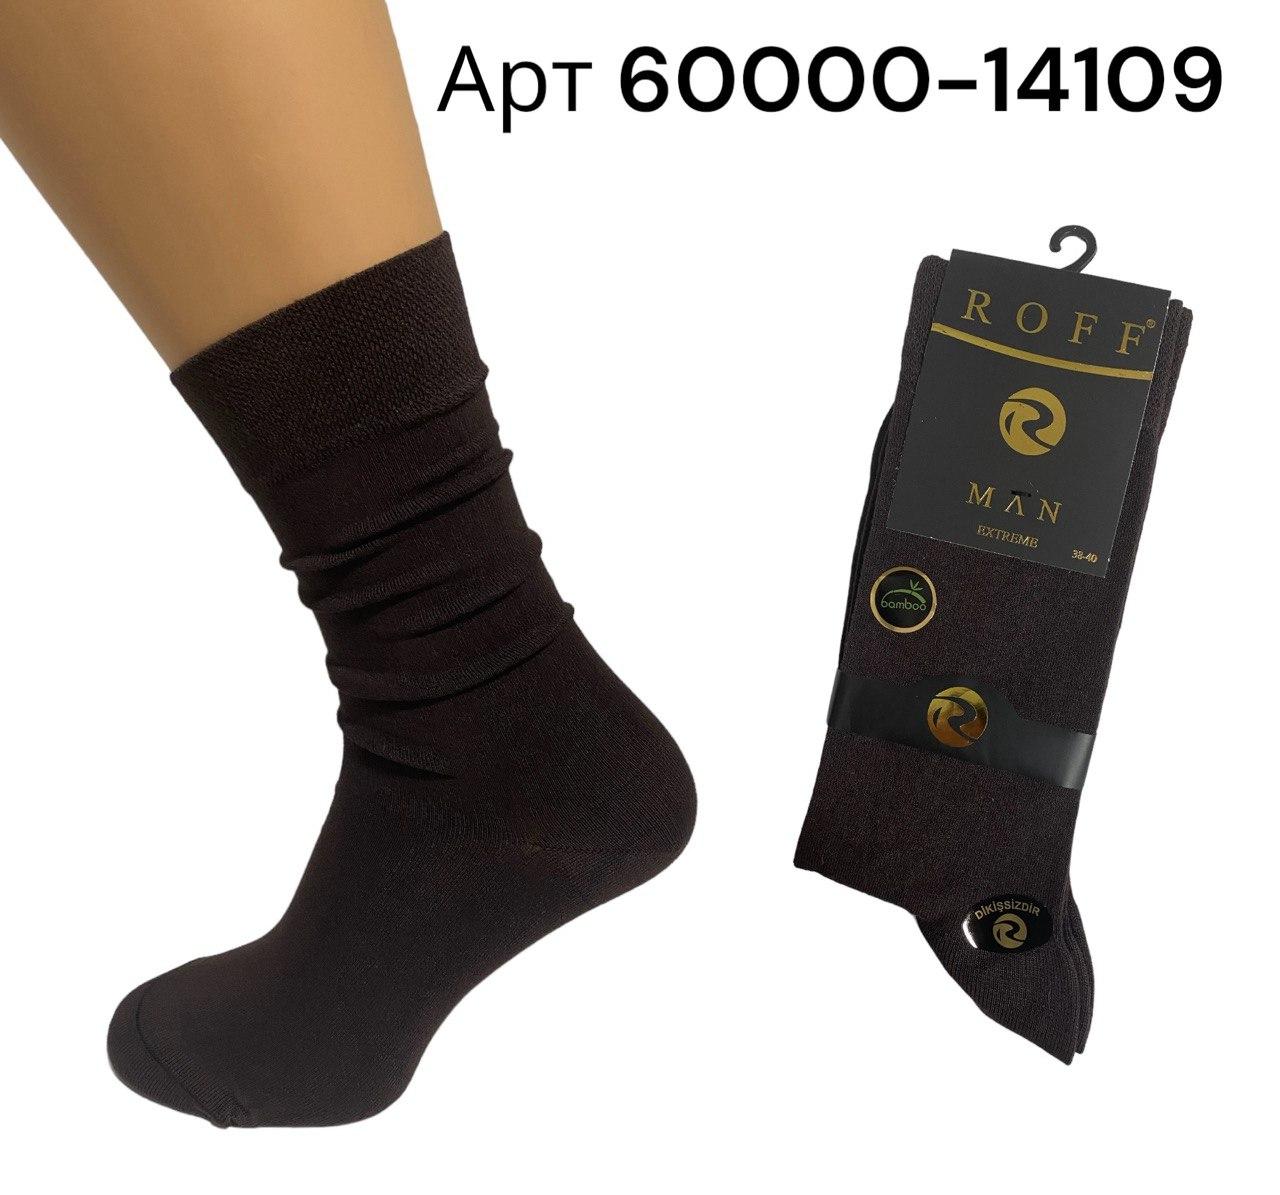 Високі чоловічі шкарпетки бамбук Roff 60000-14109 р 38-40 Шоколадні